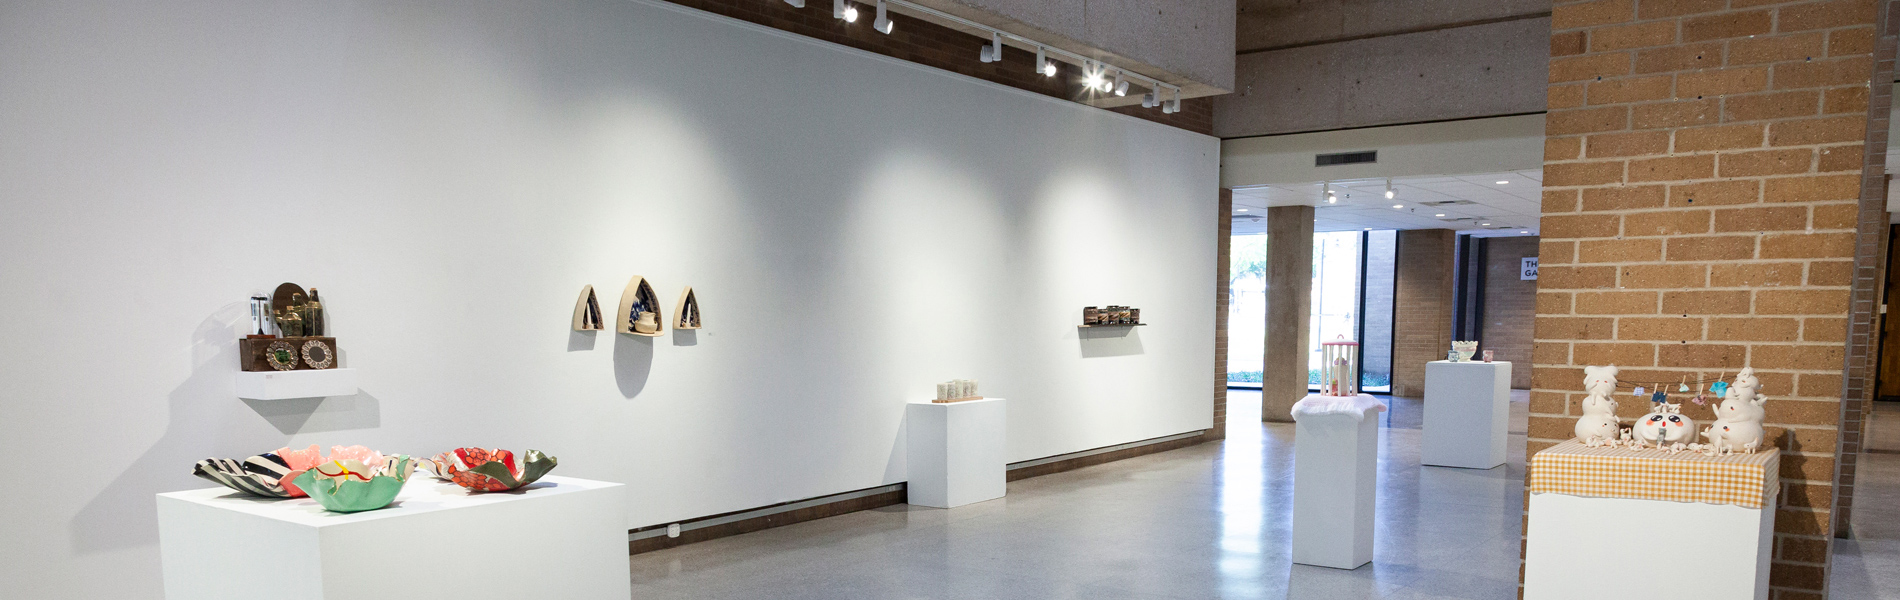 Visit the Paul Voertman Gallery in the UNT Art Building to appreciate the undergraduate student exhi